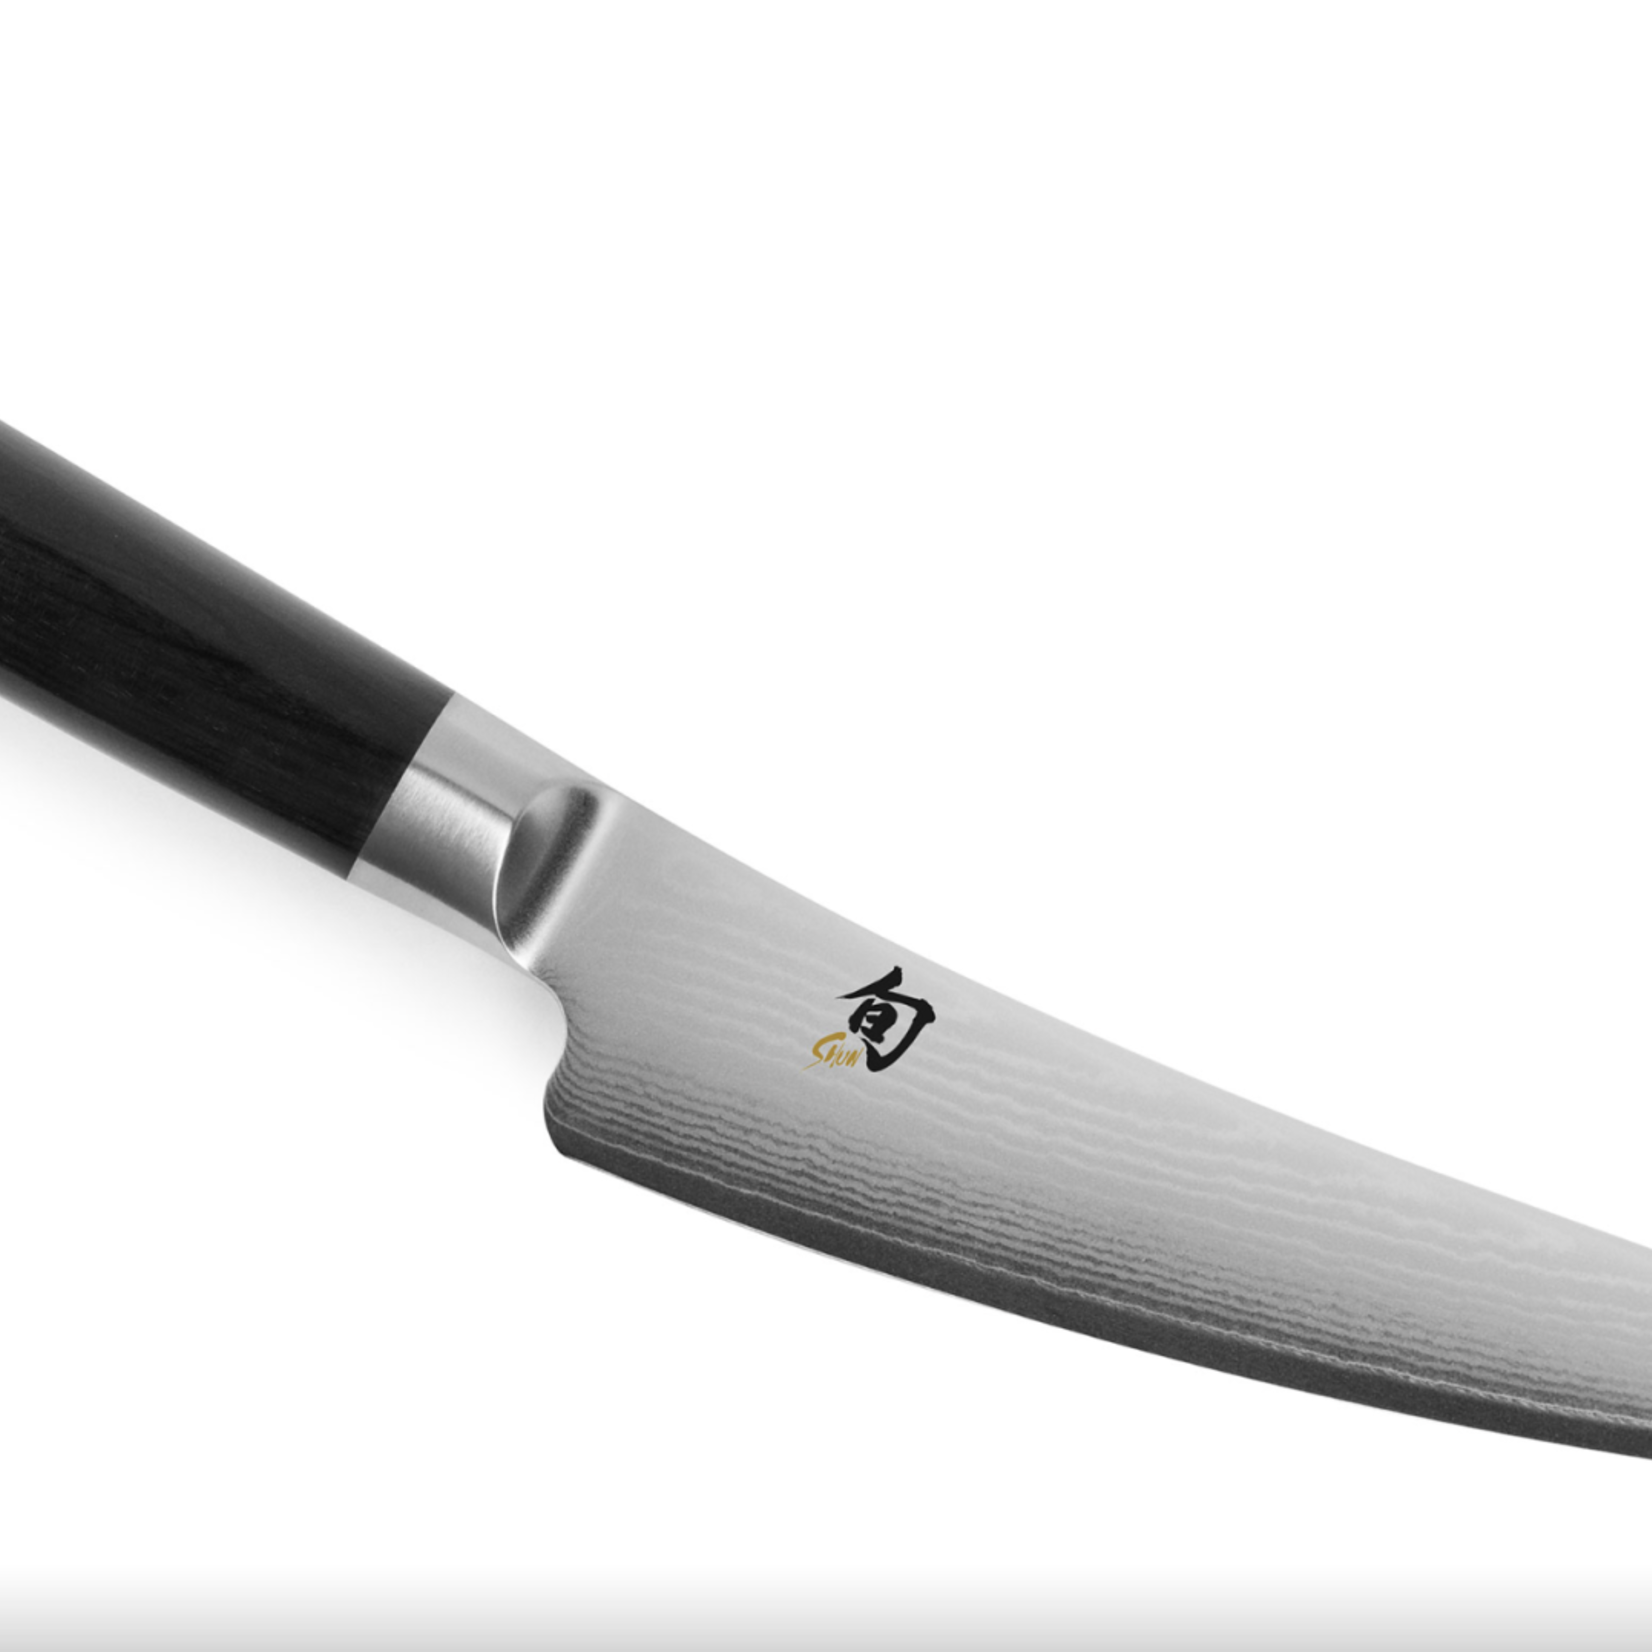 Shun Shun Classic Boning Knife 6"